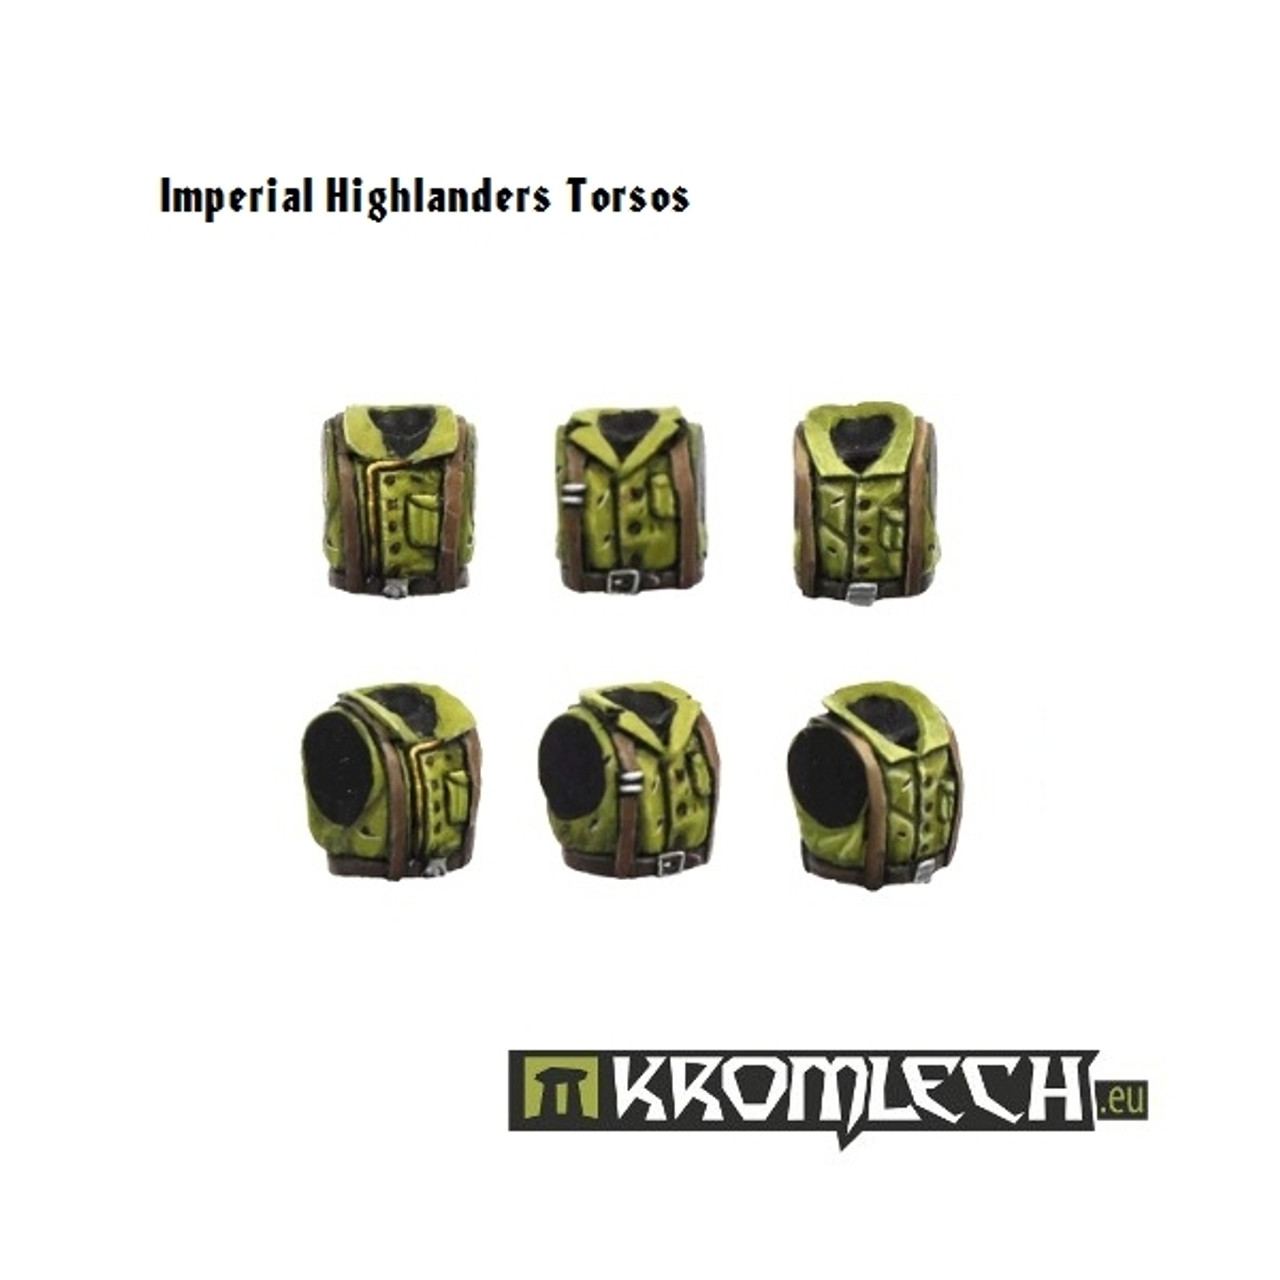 Imperial Highlanders Torsos (10) - KRCB072